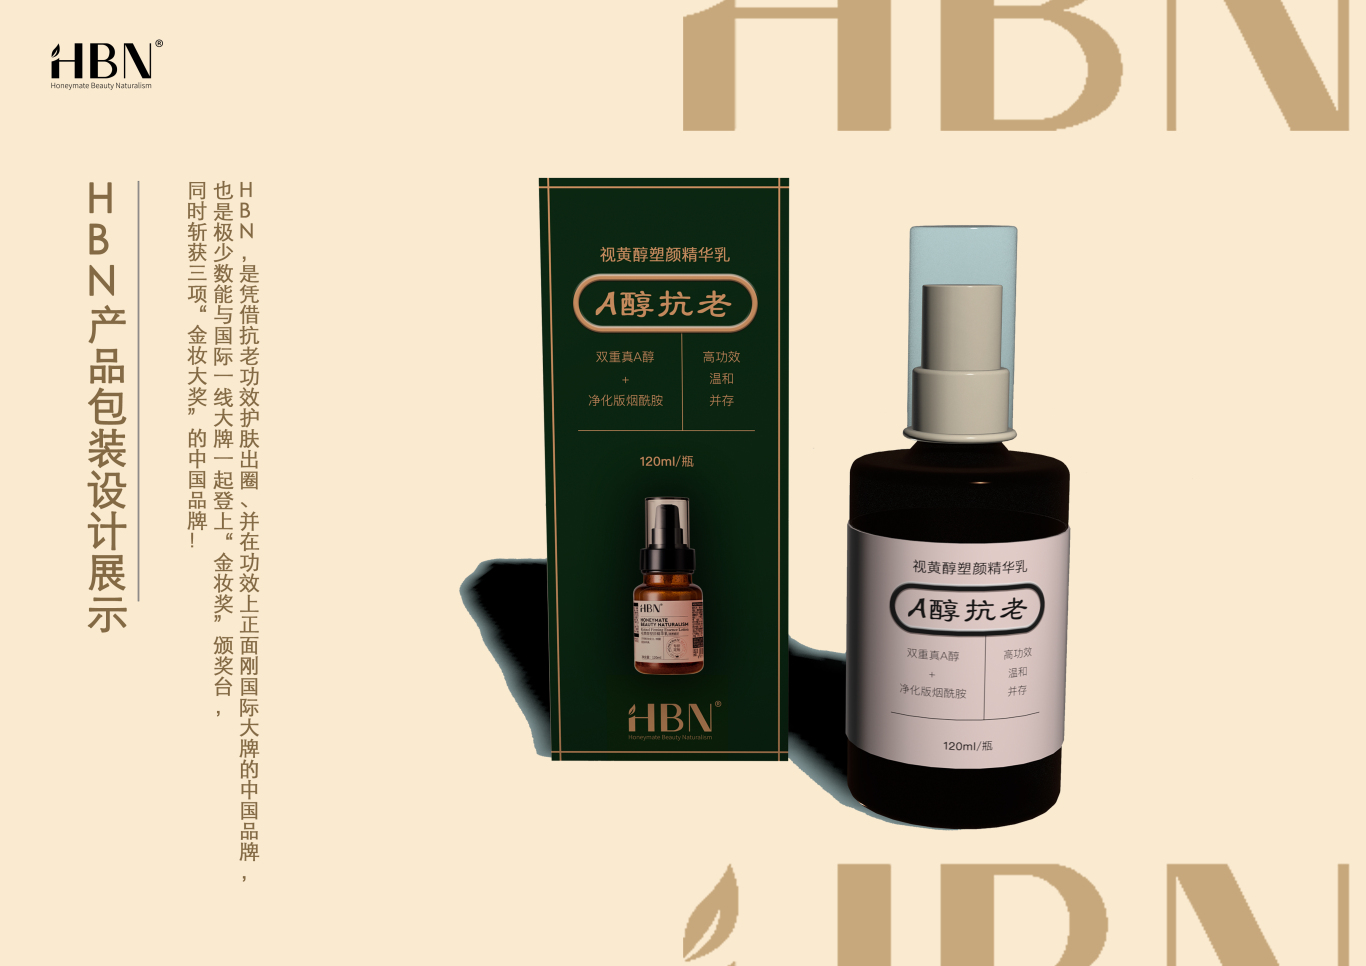 HBN抗老化妆品包装设计图1